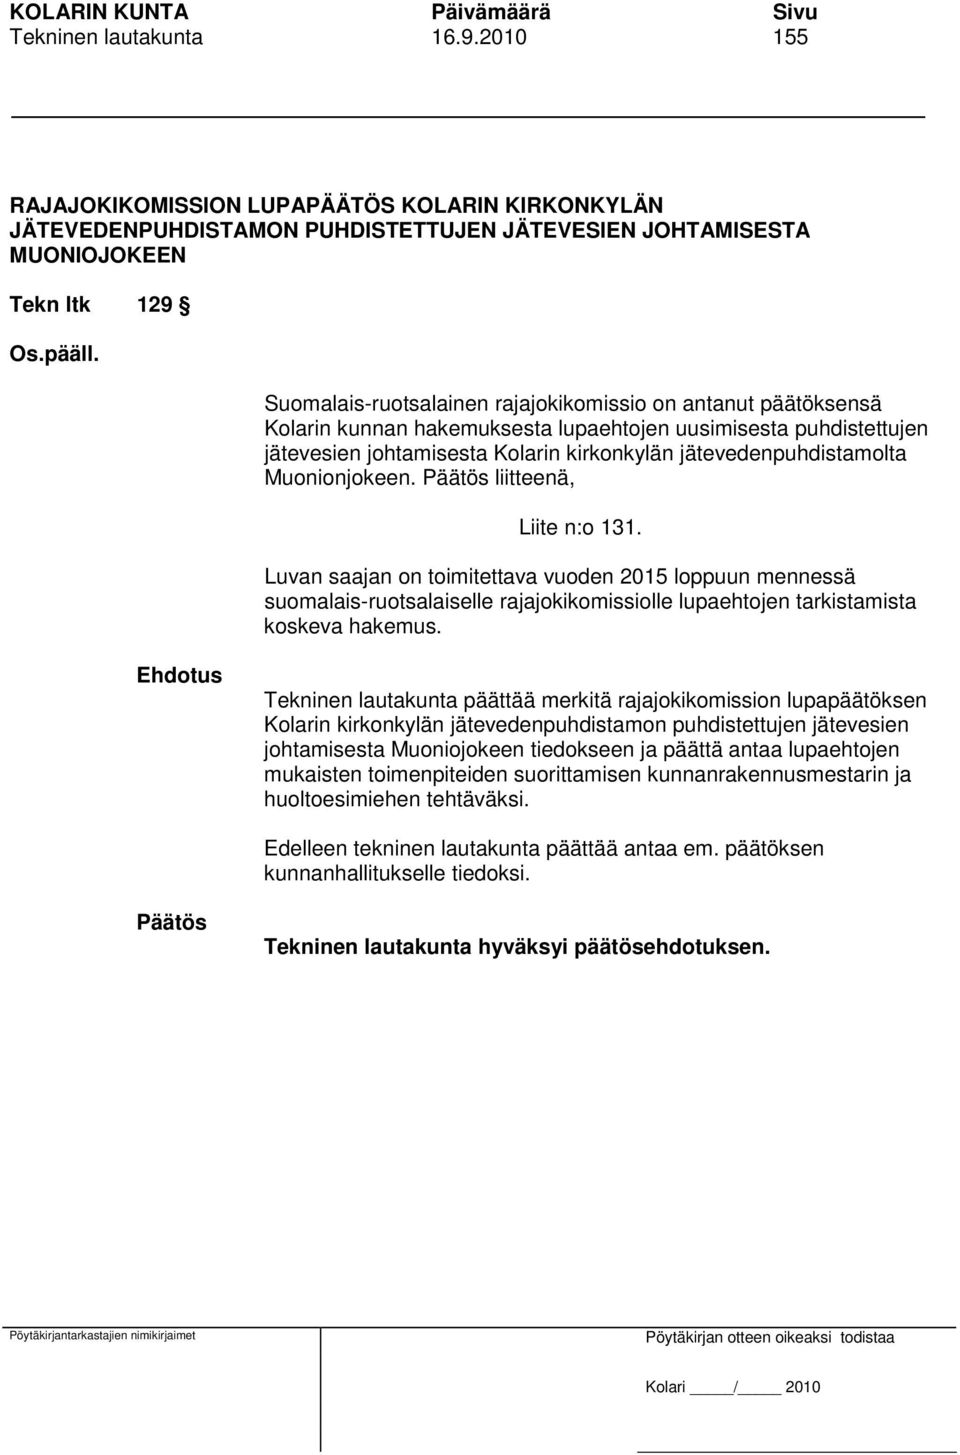 Muonionjokeen. liitteenä, Liite n:o 131. Luvan saajan on toimitettava vuoden 2015 loppuun mennessä suomalais-ruotsalaiselle rajajokikomissiolle lupaehtojen tarkistamista koskeva hakemus.